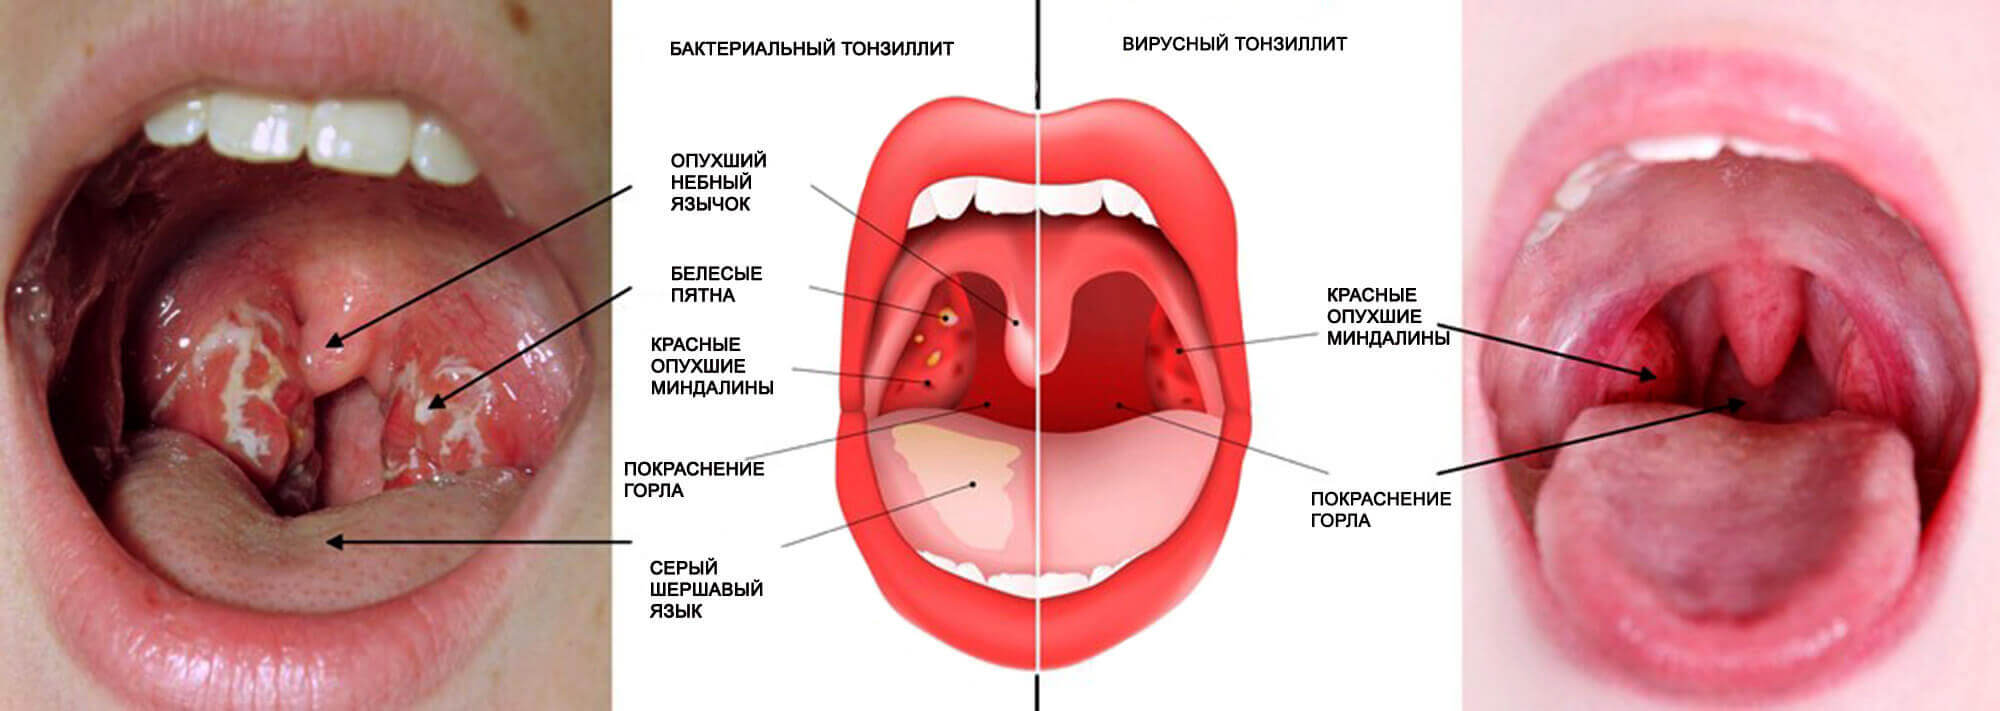 Тонзиллит - симптомы и диагностика, цены на лечение тонзиллита в Москве в клинике Хадасса